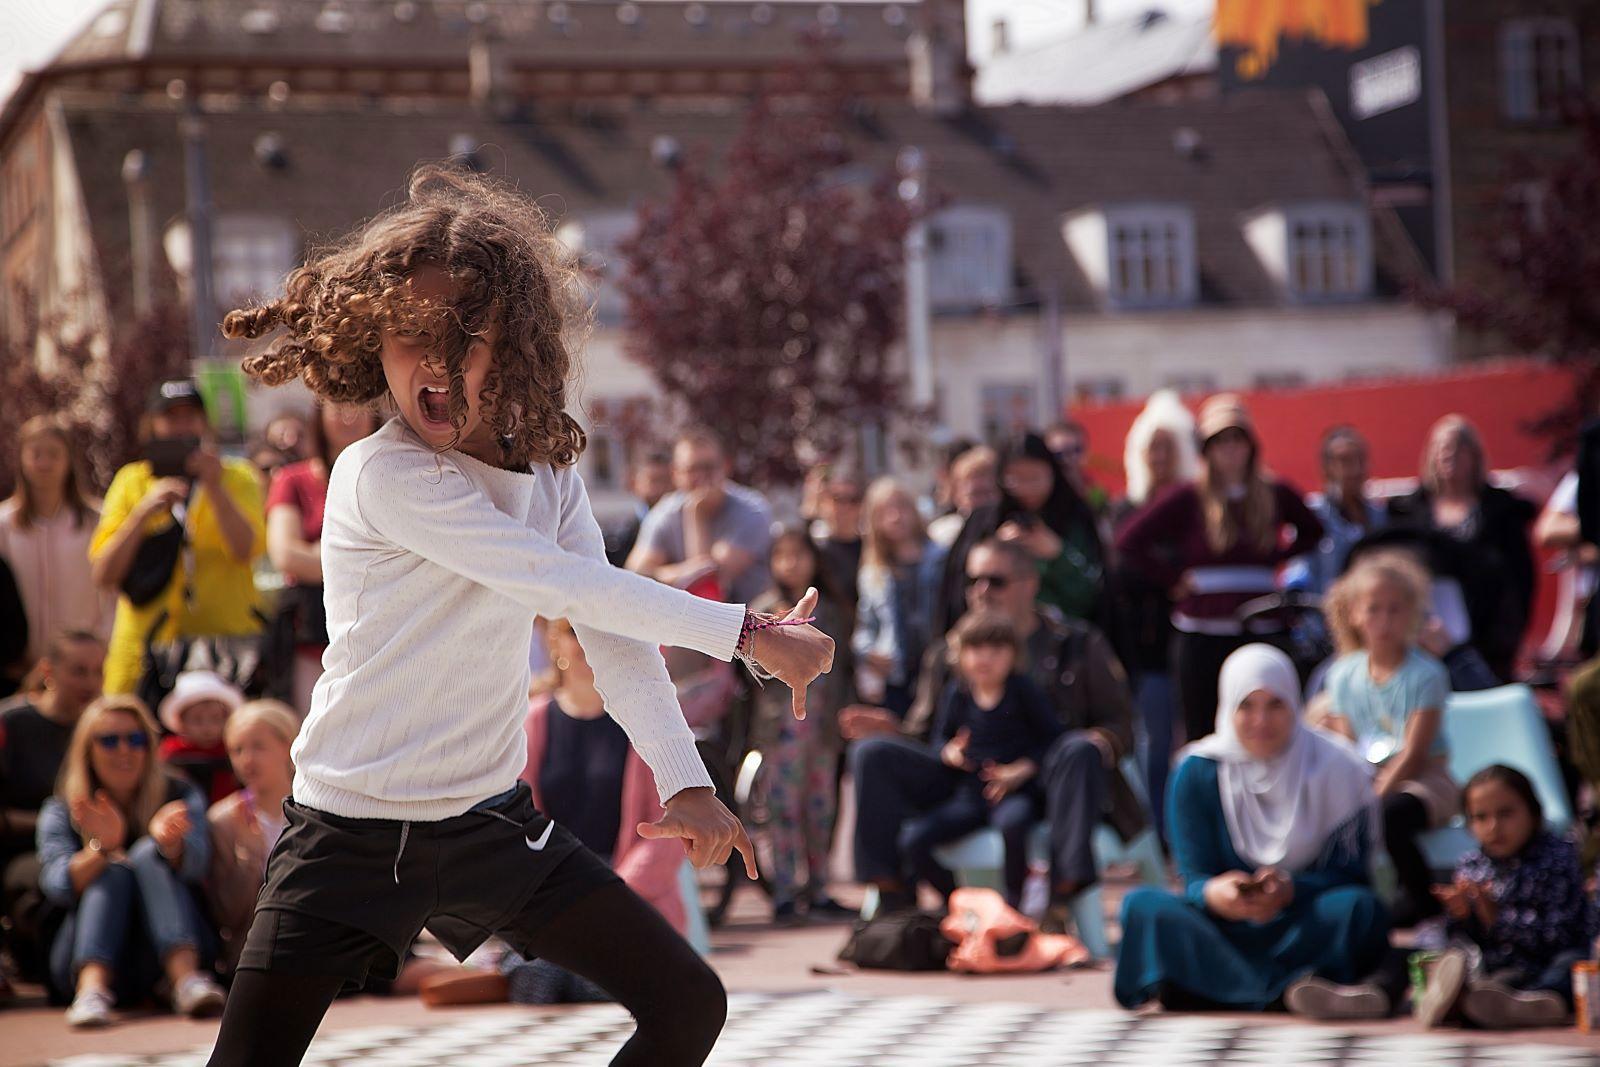 Global Kidz tilbyder danseundervisning for børn og unge. Foreningen har modtaget midler fra Roskilde Festival.